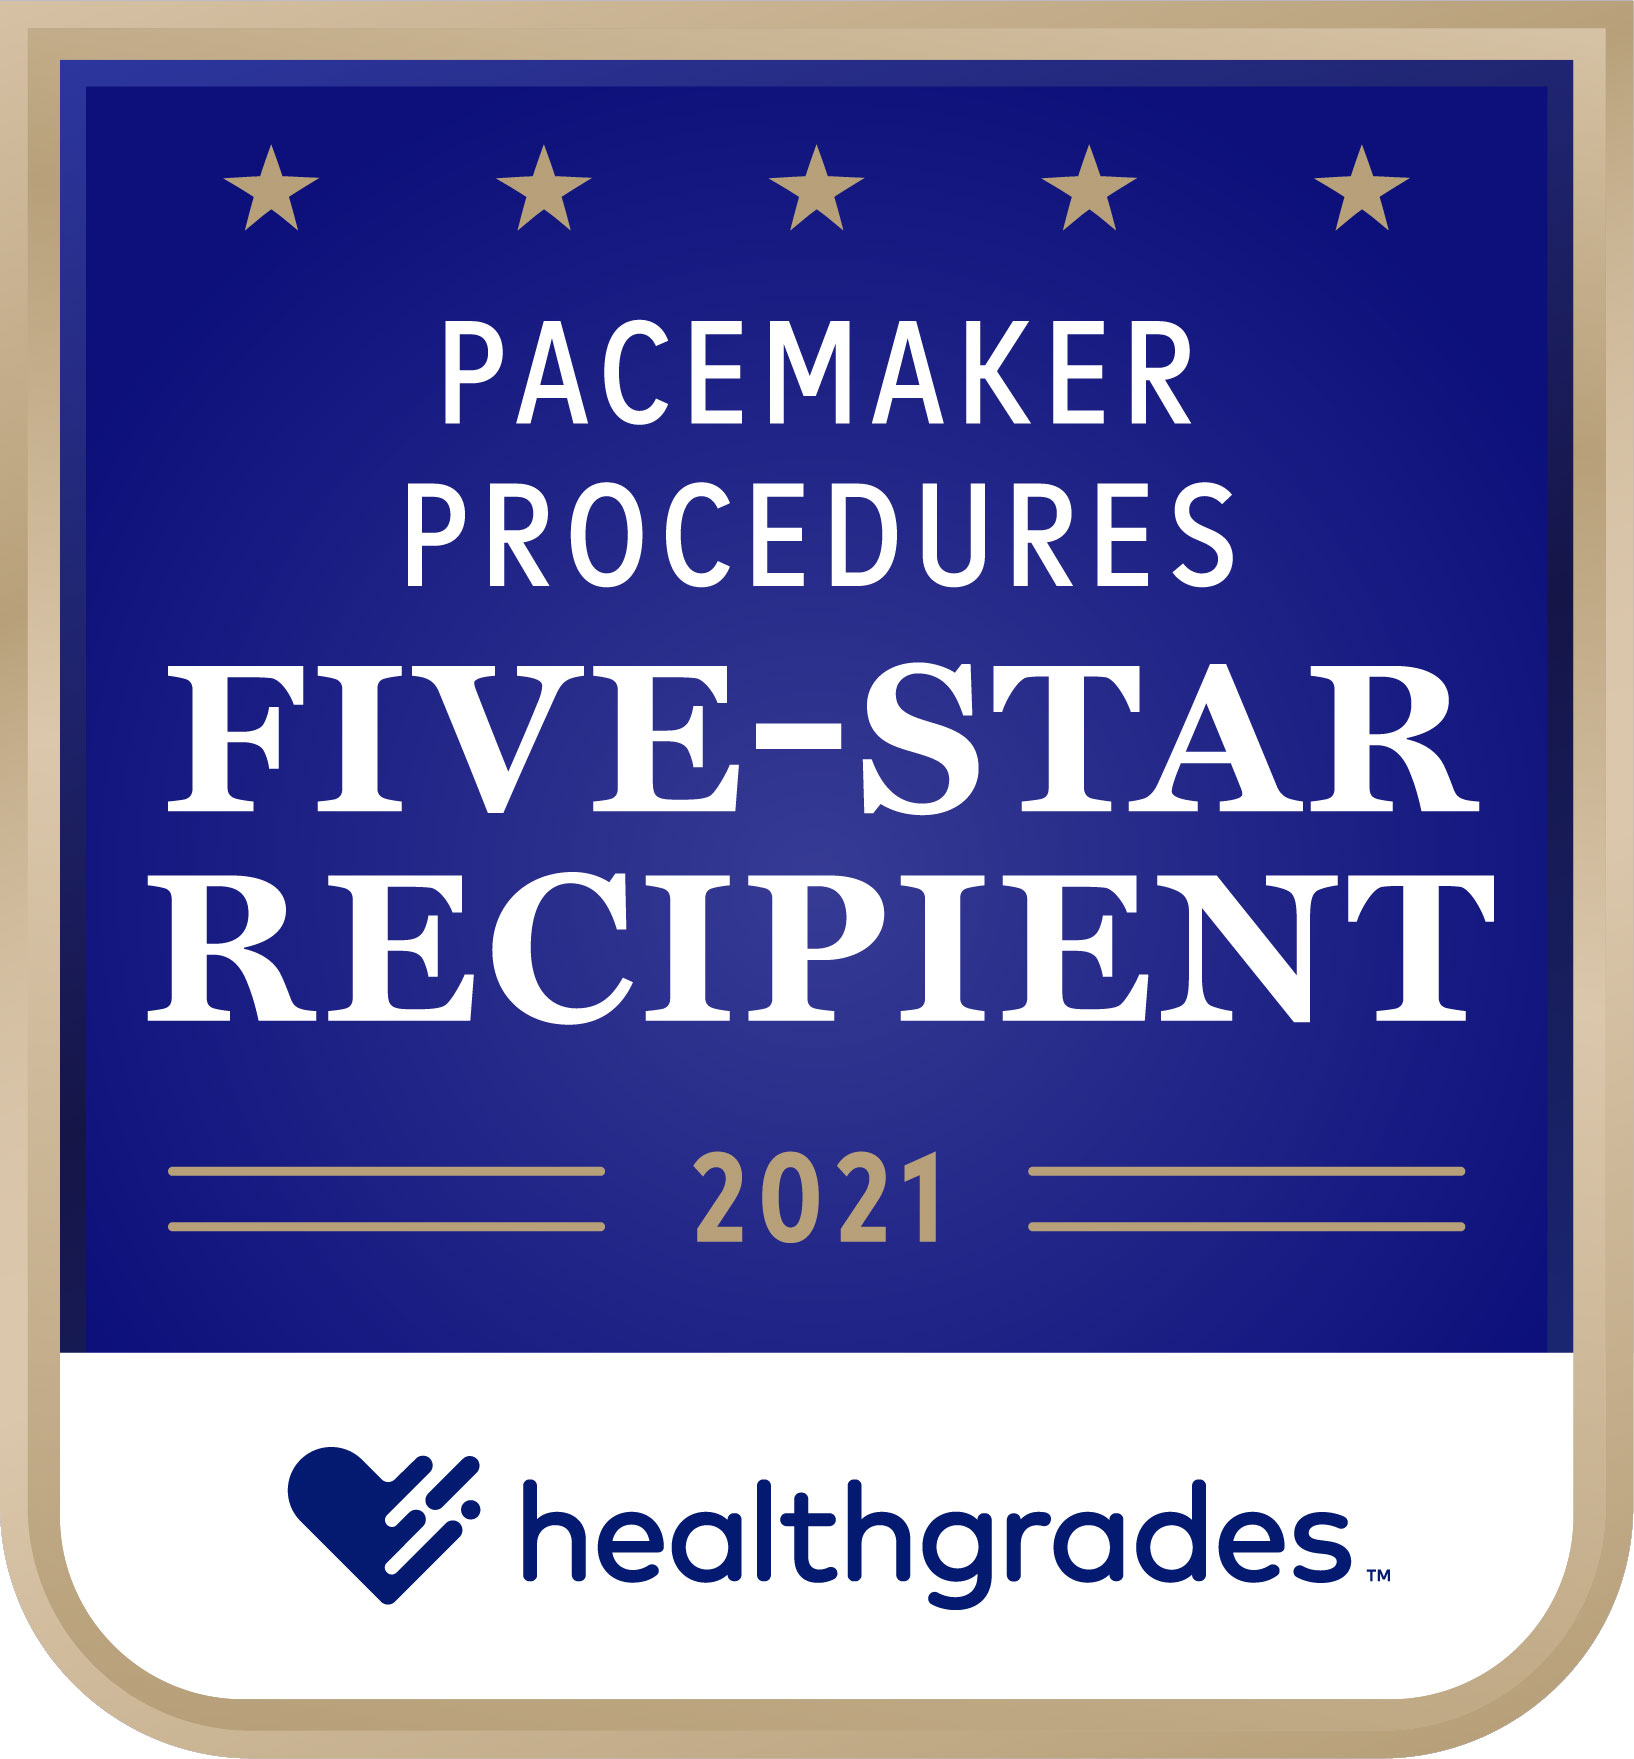 Five-Star_Pacemaker_Procedures_2021